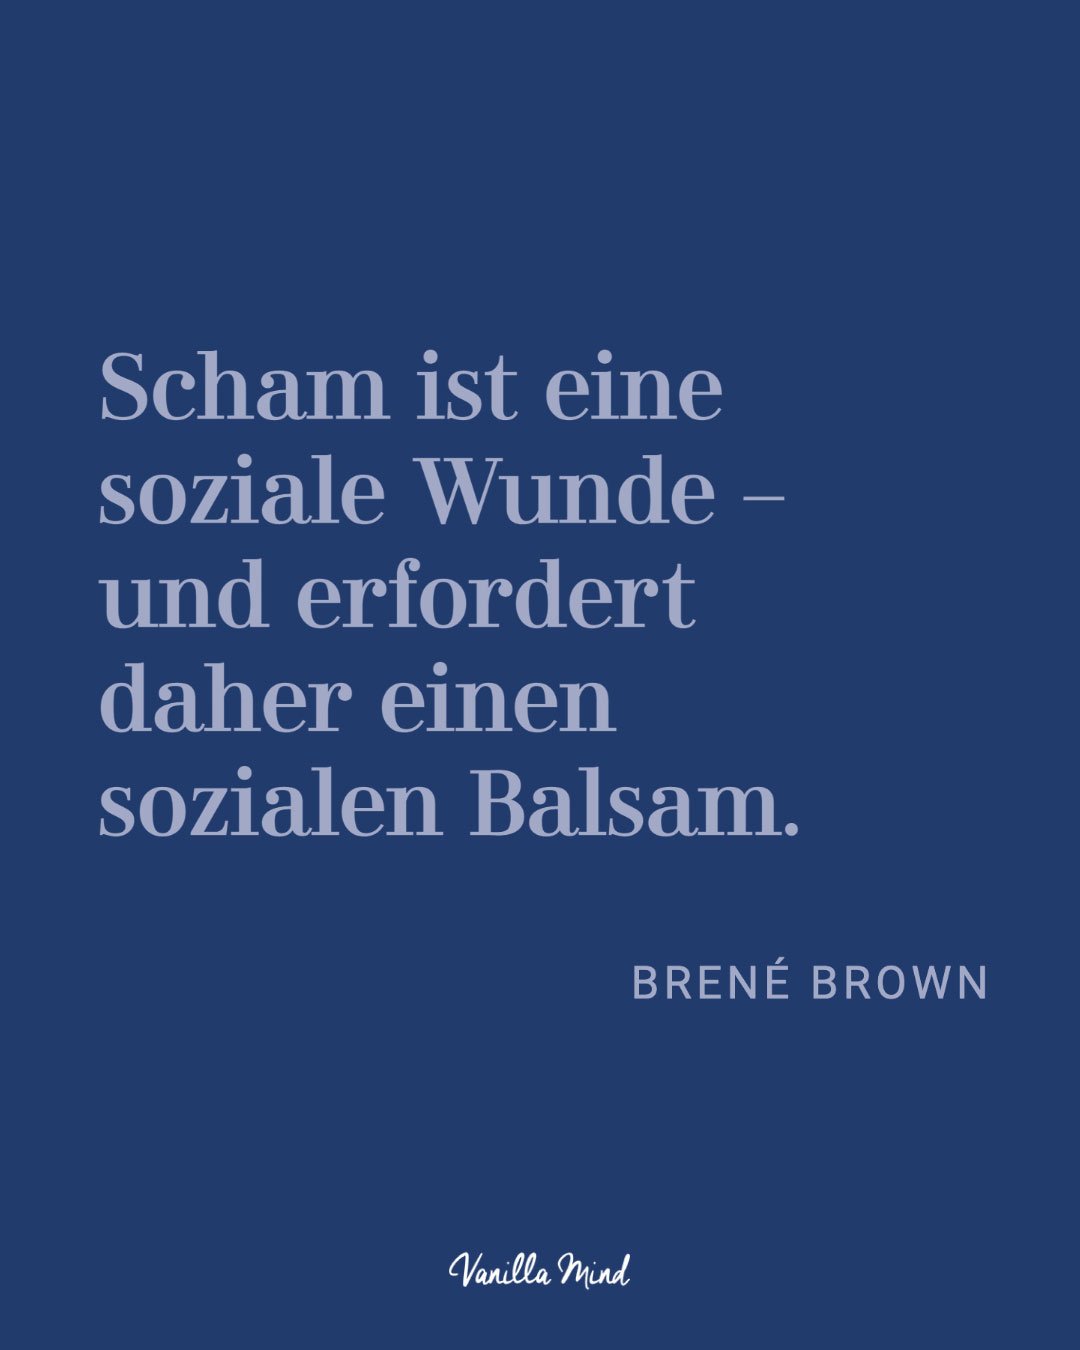 Das beste Zitat zum Umgang mit Scham und schwierigen Gefühlen liefert Brené Brown: „Scham ist eine soziale Wunde und erfordert daher einen sozialen Balsam.“